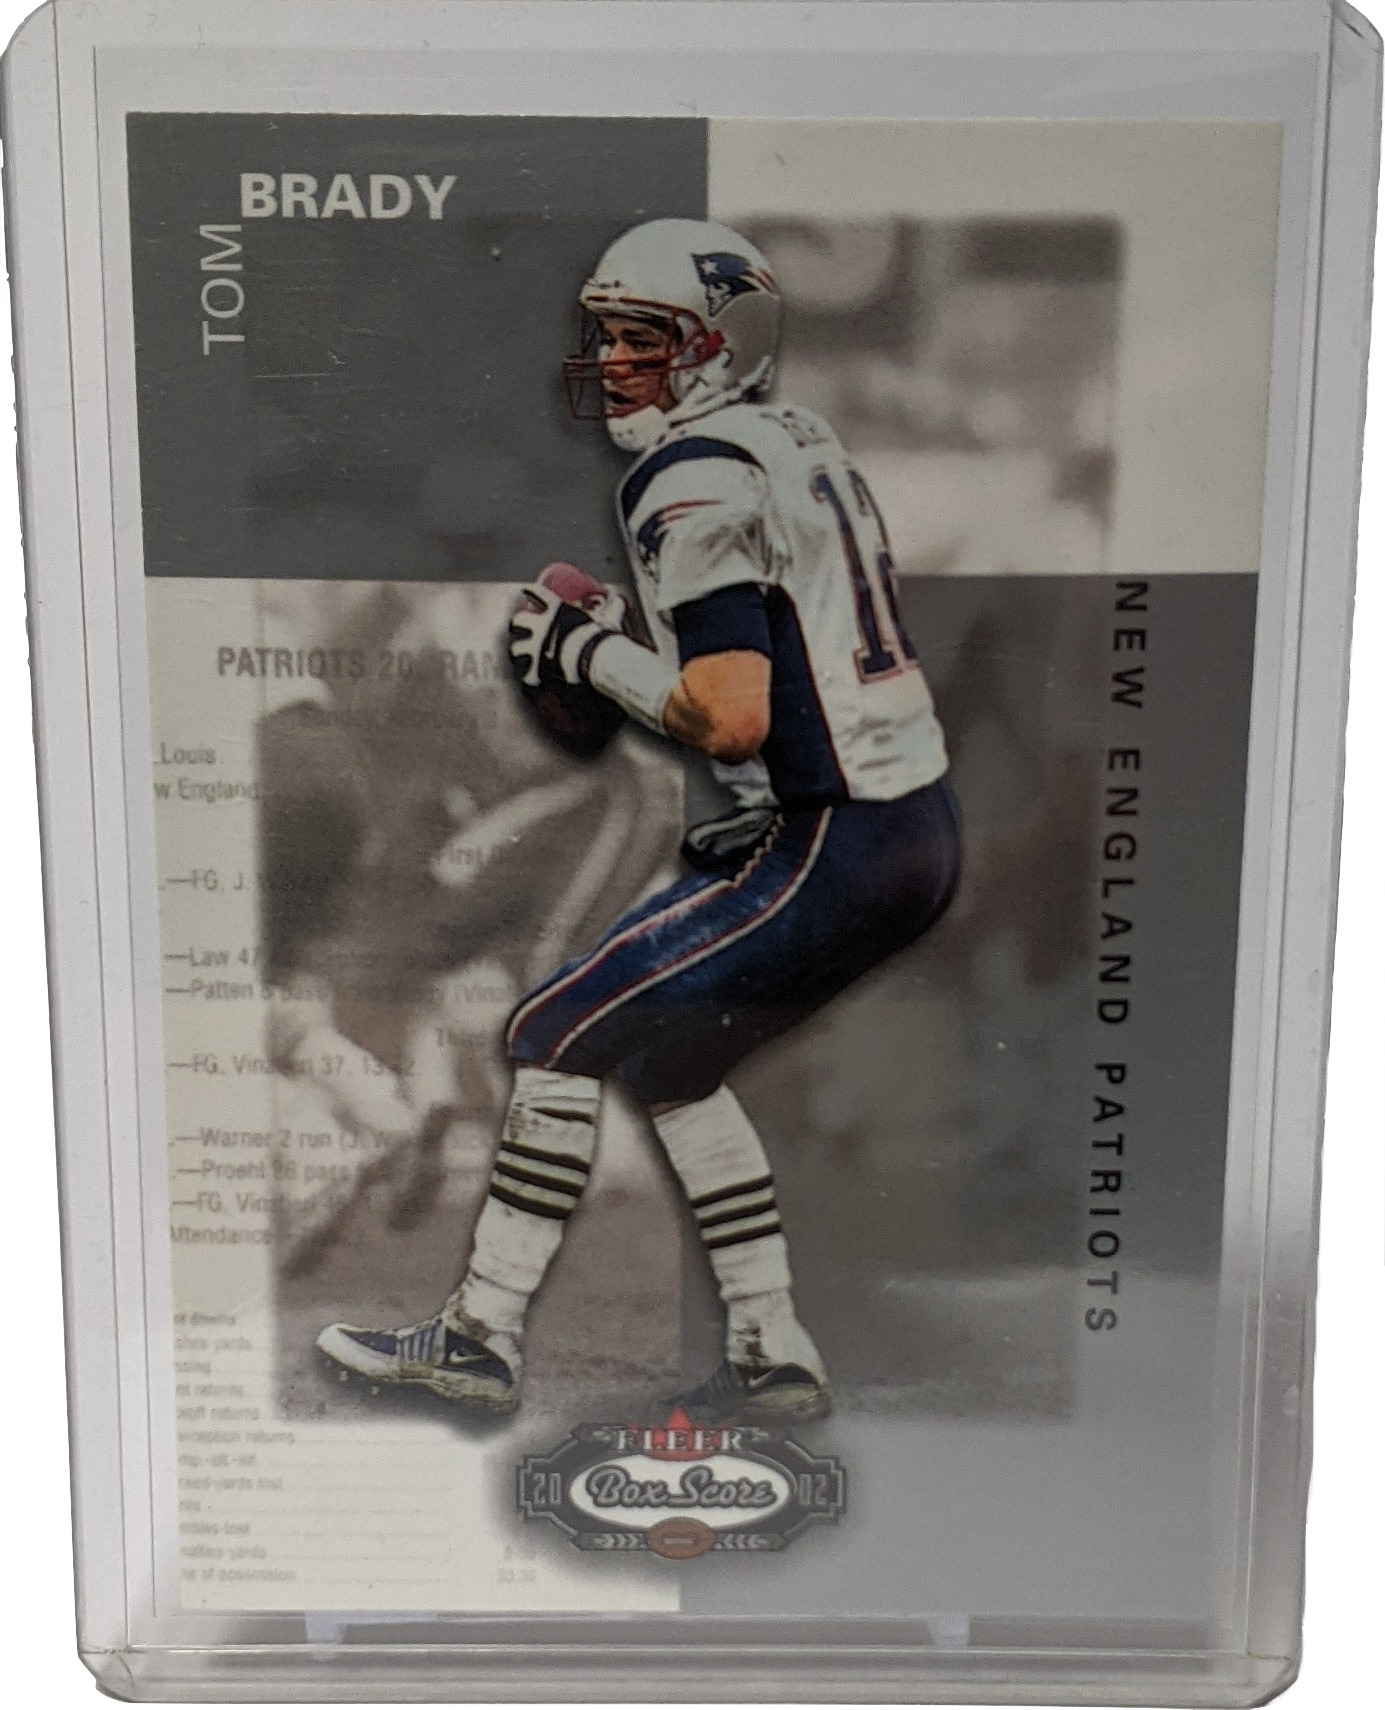 2002 Fleer Box Score Tom Brady